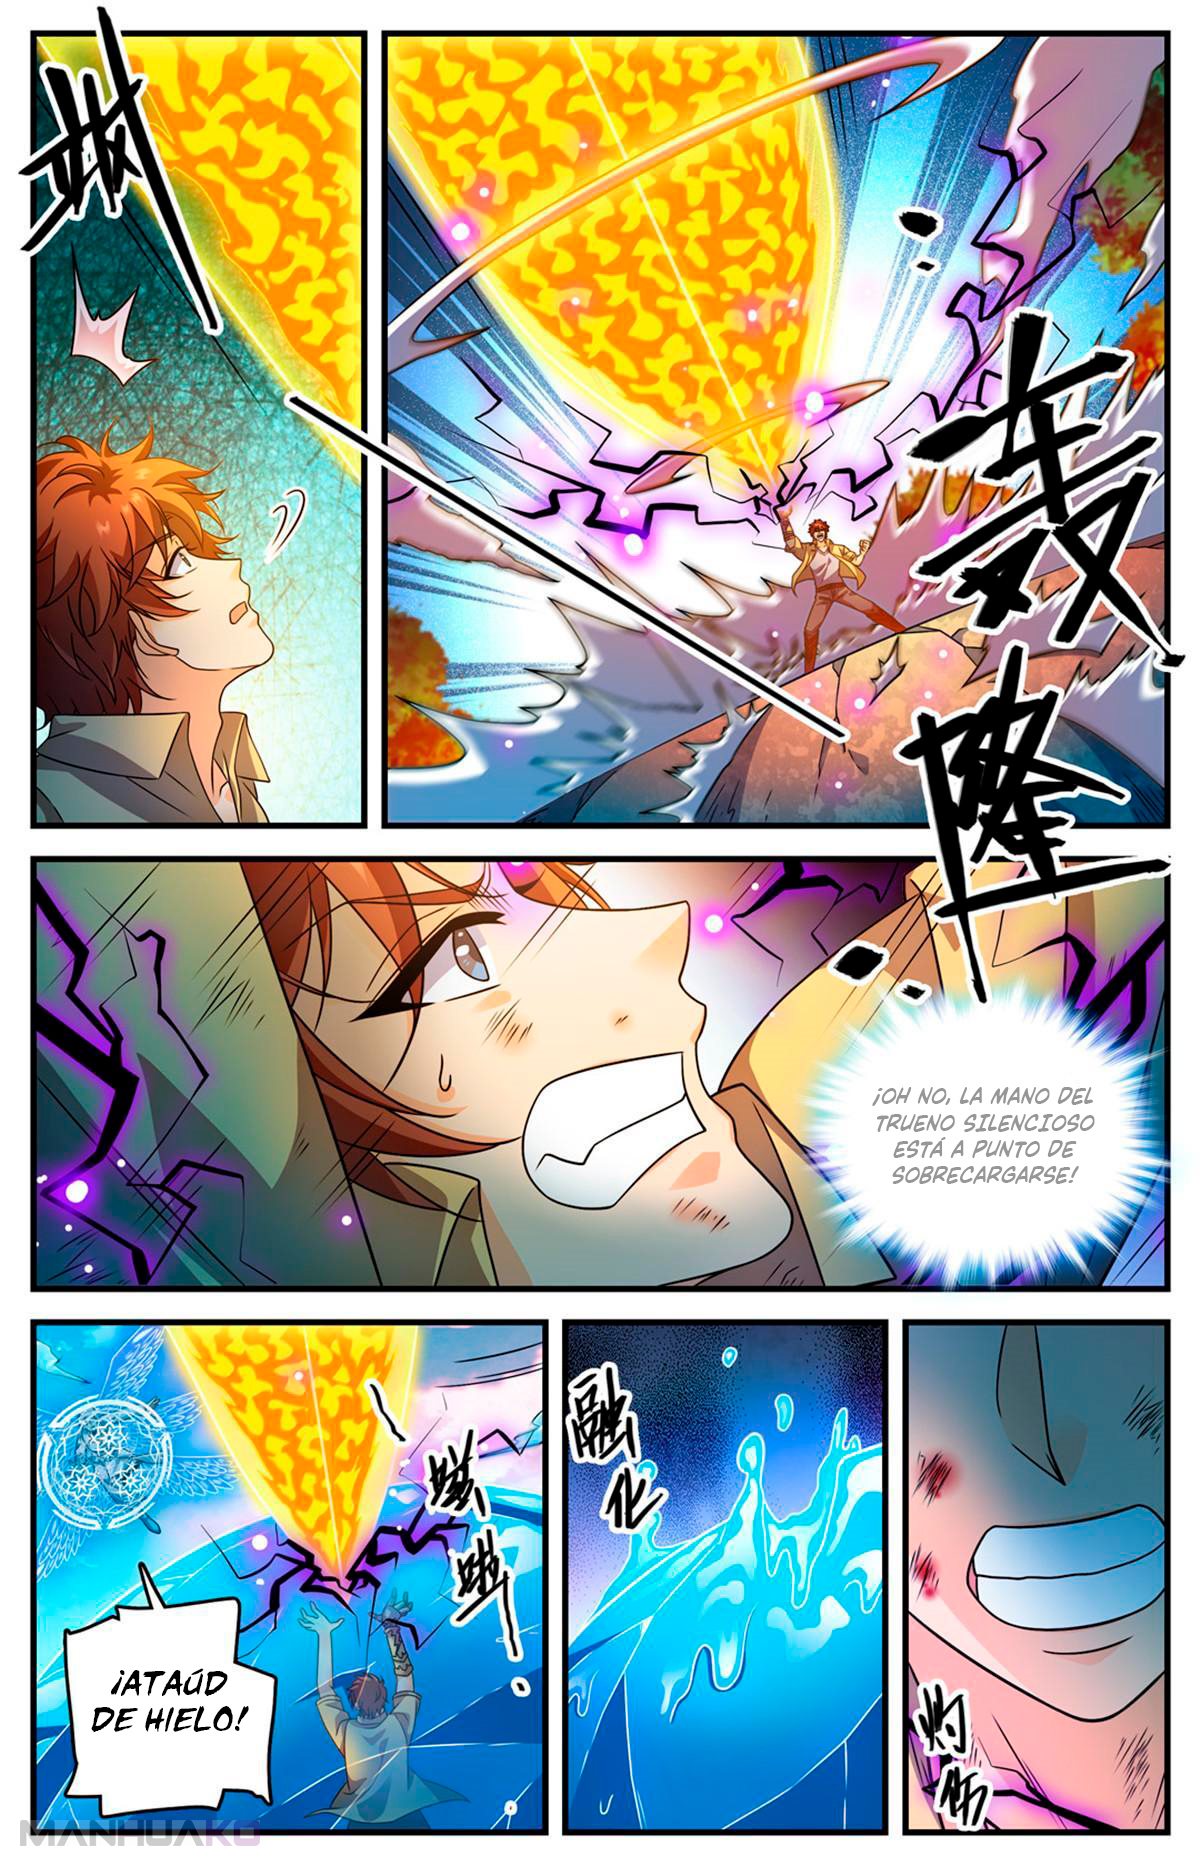 Manga Versatile Mage Chapter 967 image number 10